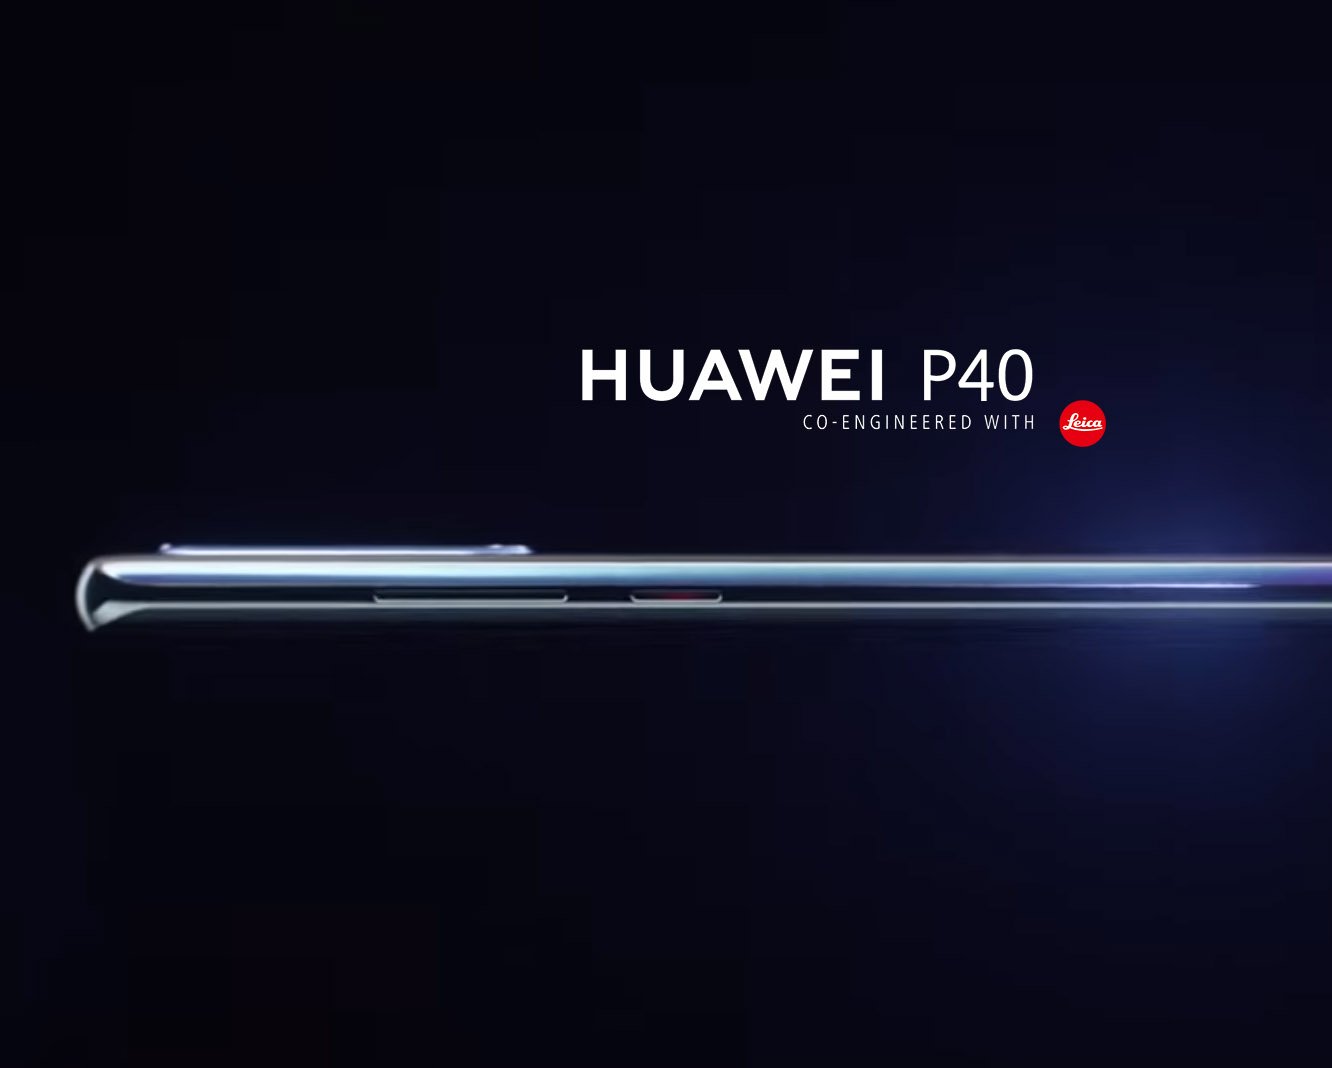 كل ما نعرفه حتى الآن عن هاتف Huawei الرائد الأول لعام 2020 هاتف Huawei P40